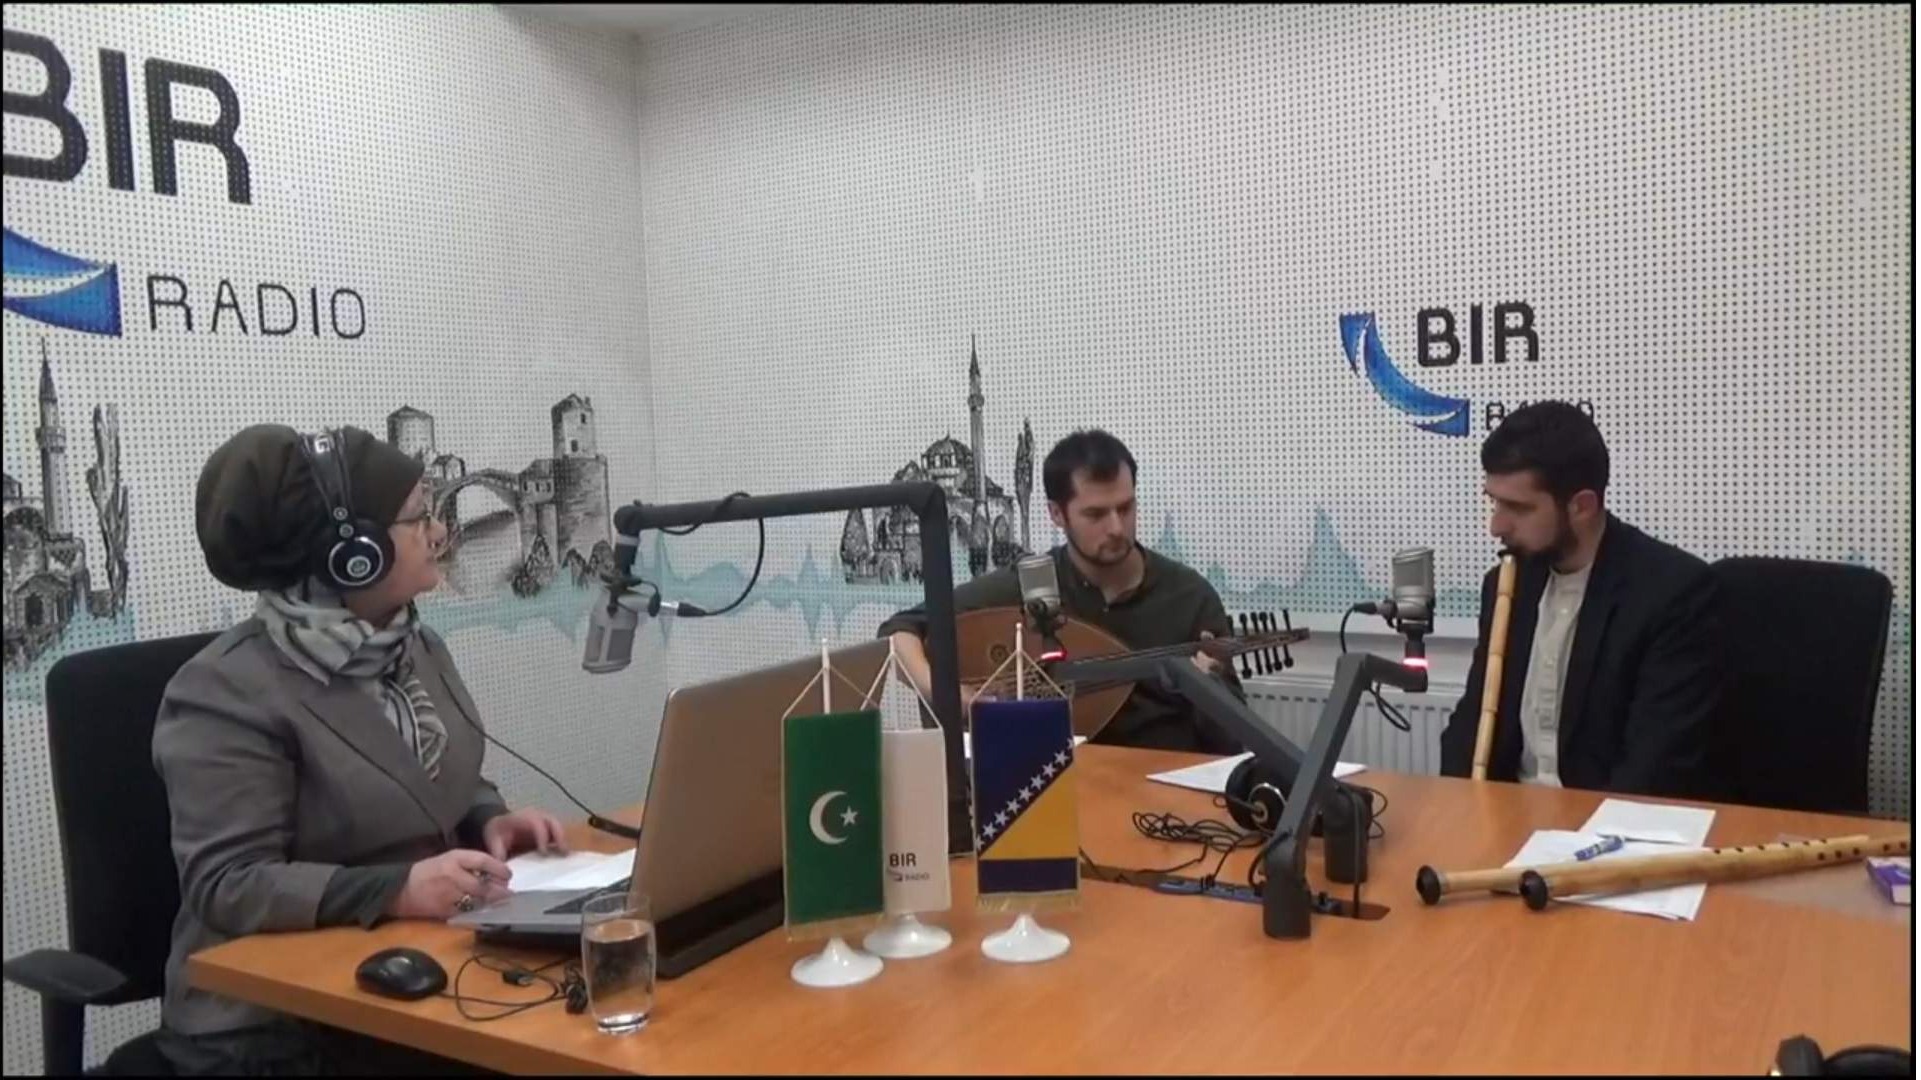 Sehurski program Radija BIR: O islamu i muzičkoj kulturi muslimana